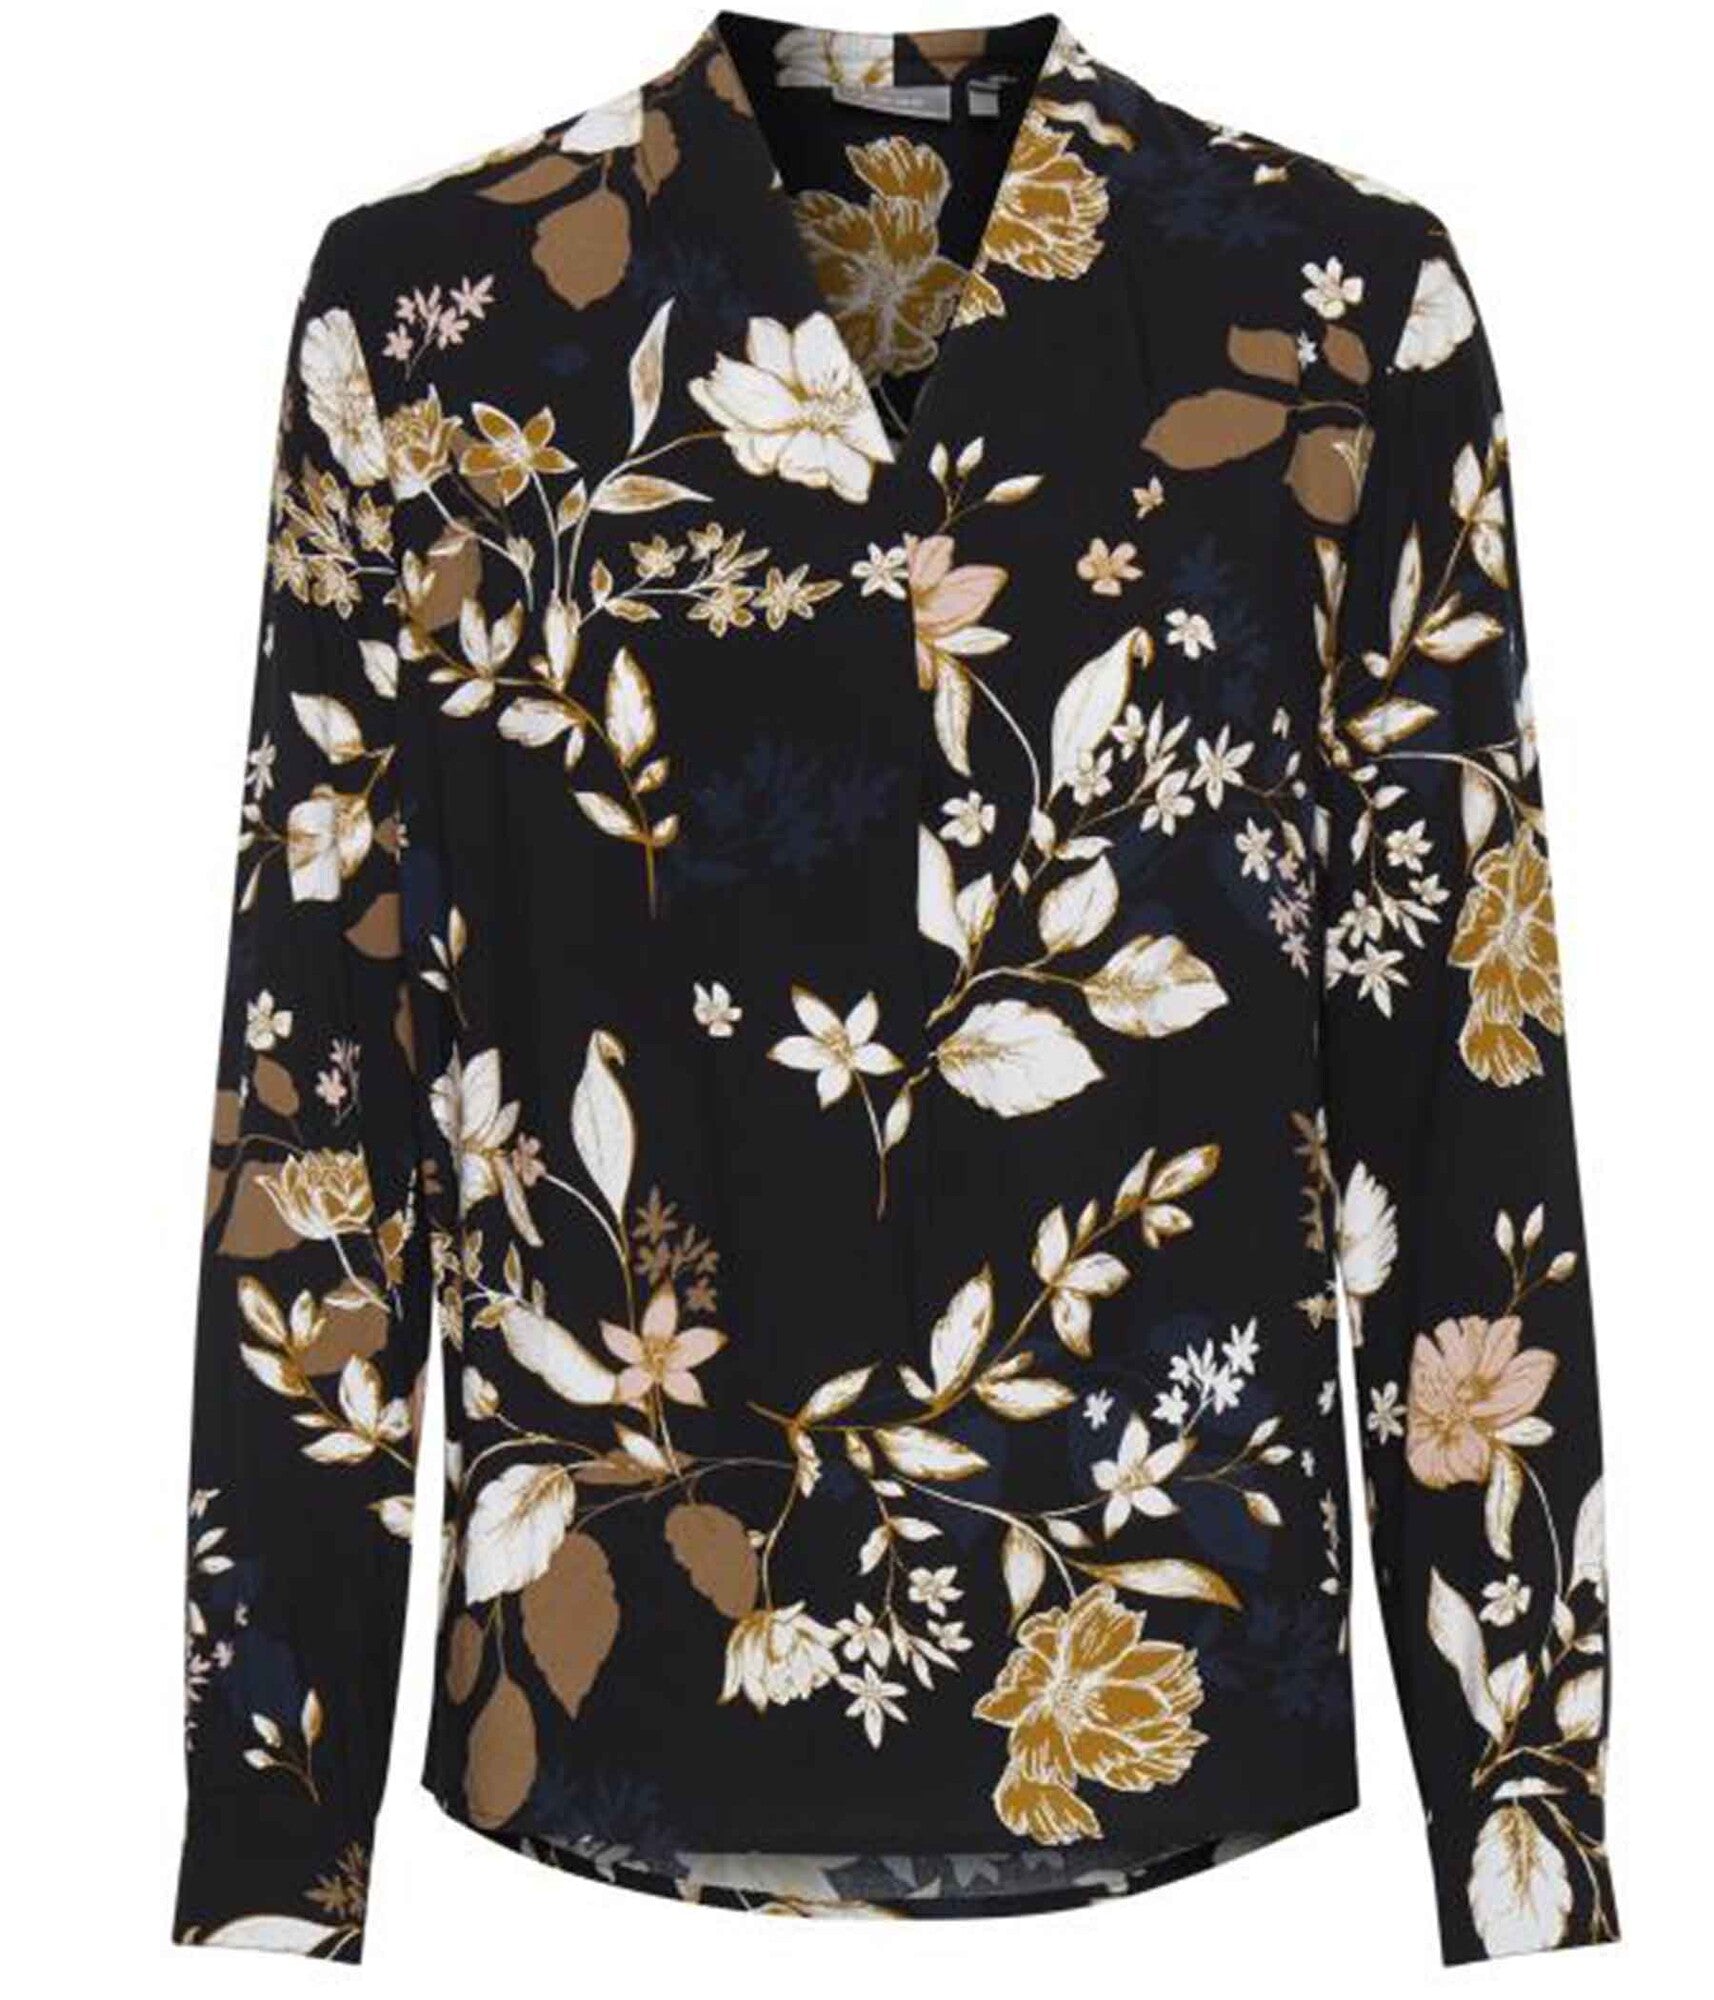 Fransa bluse med blomster i – Heidisbutik sort print